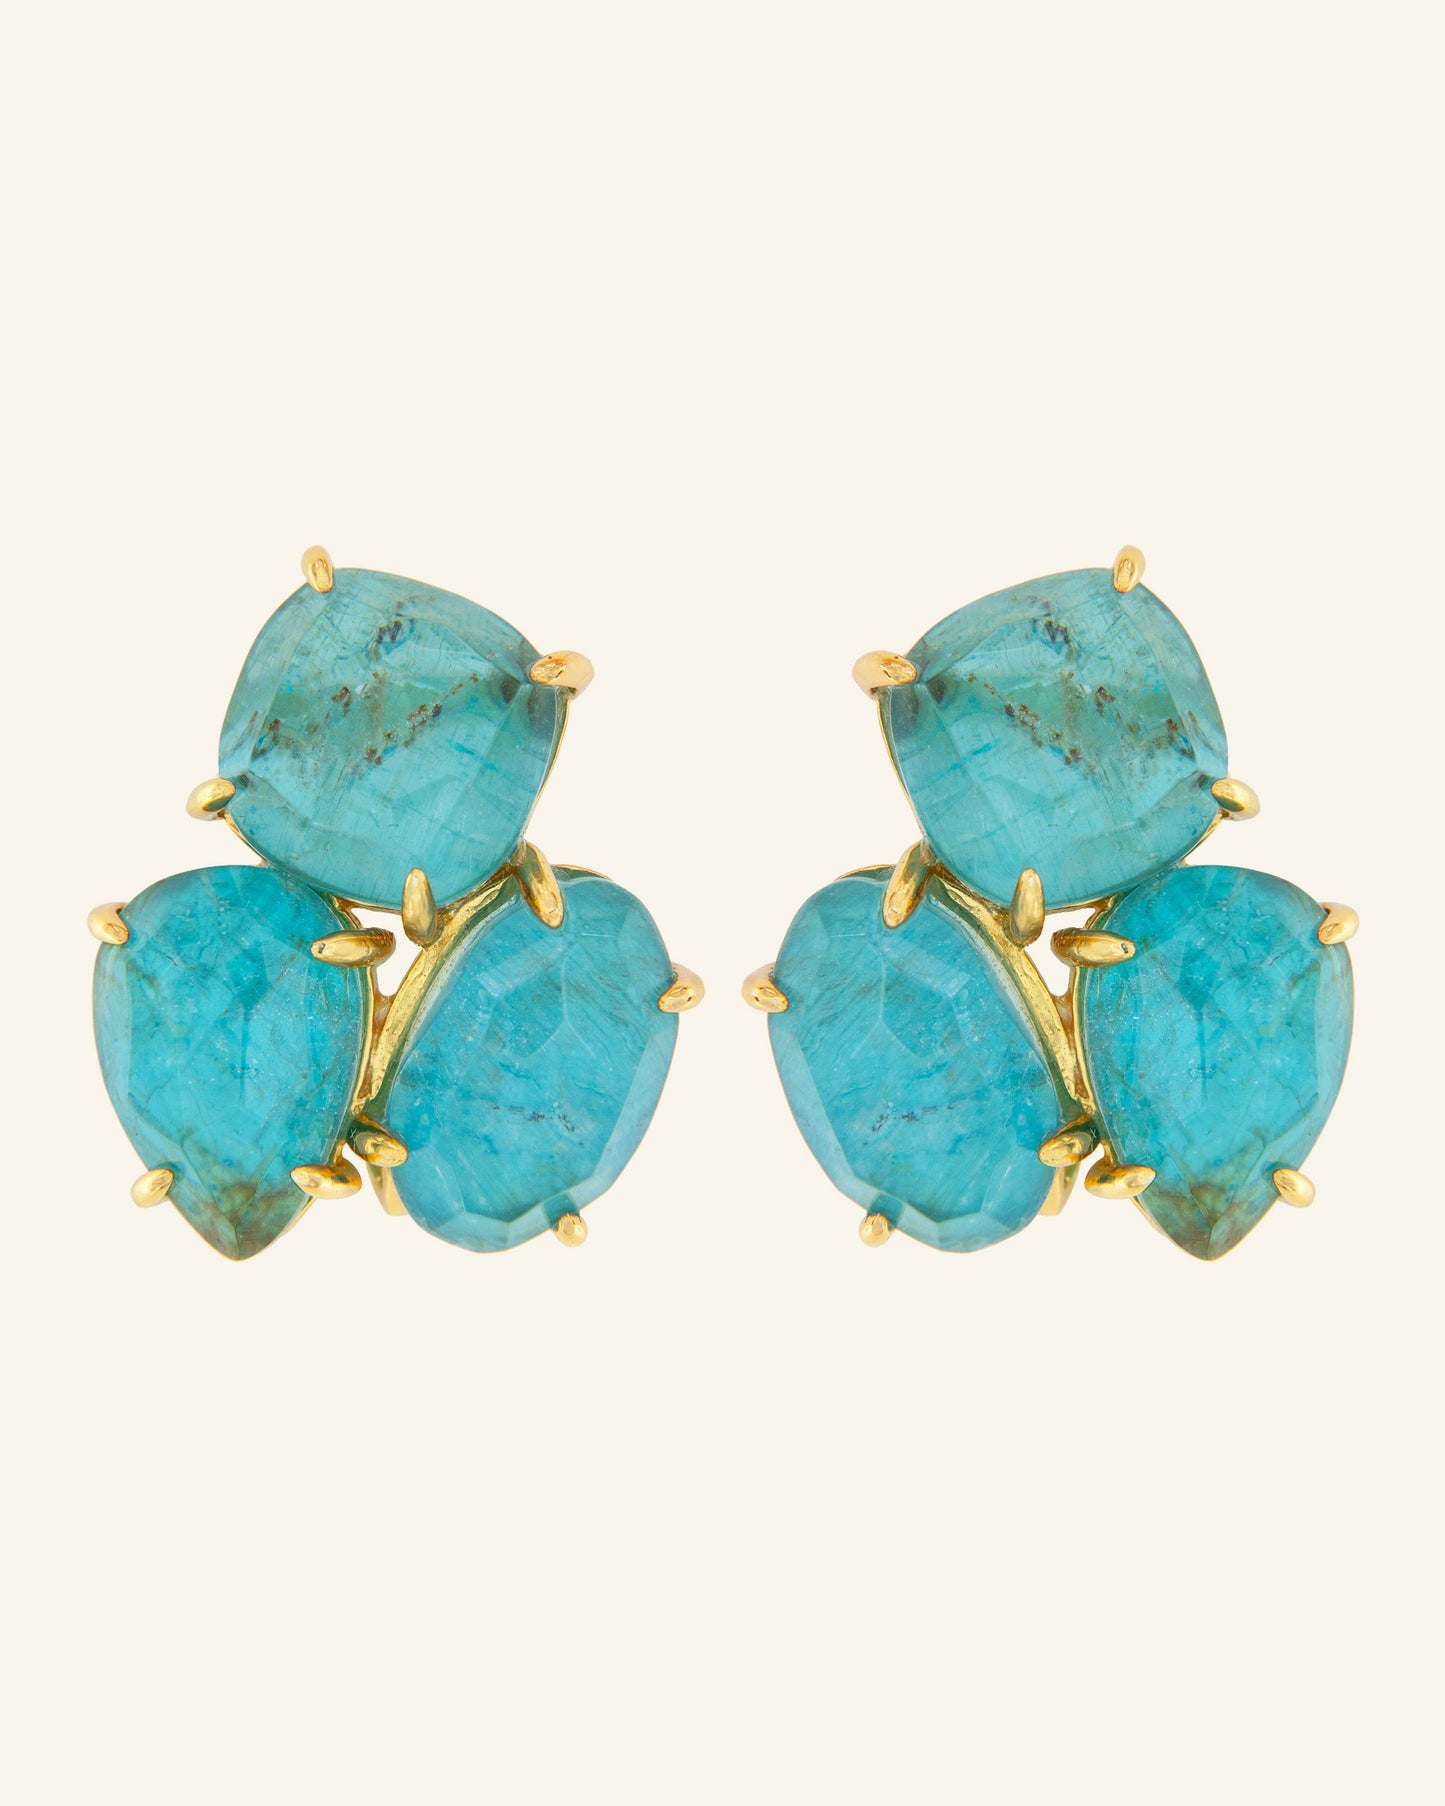 Kraz earrings with blue apatite